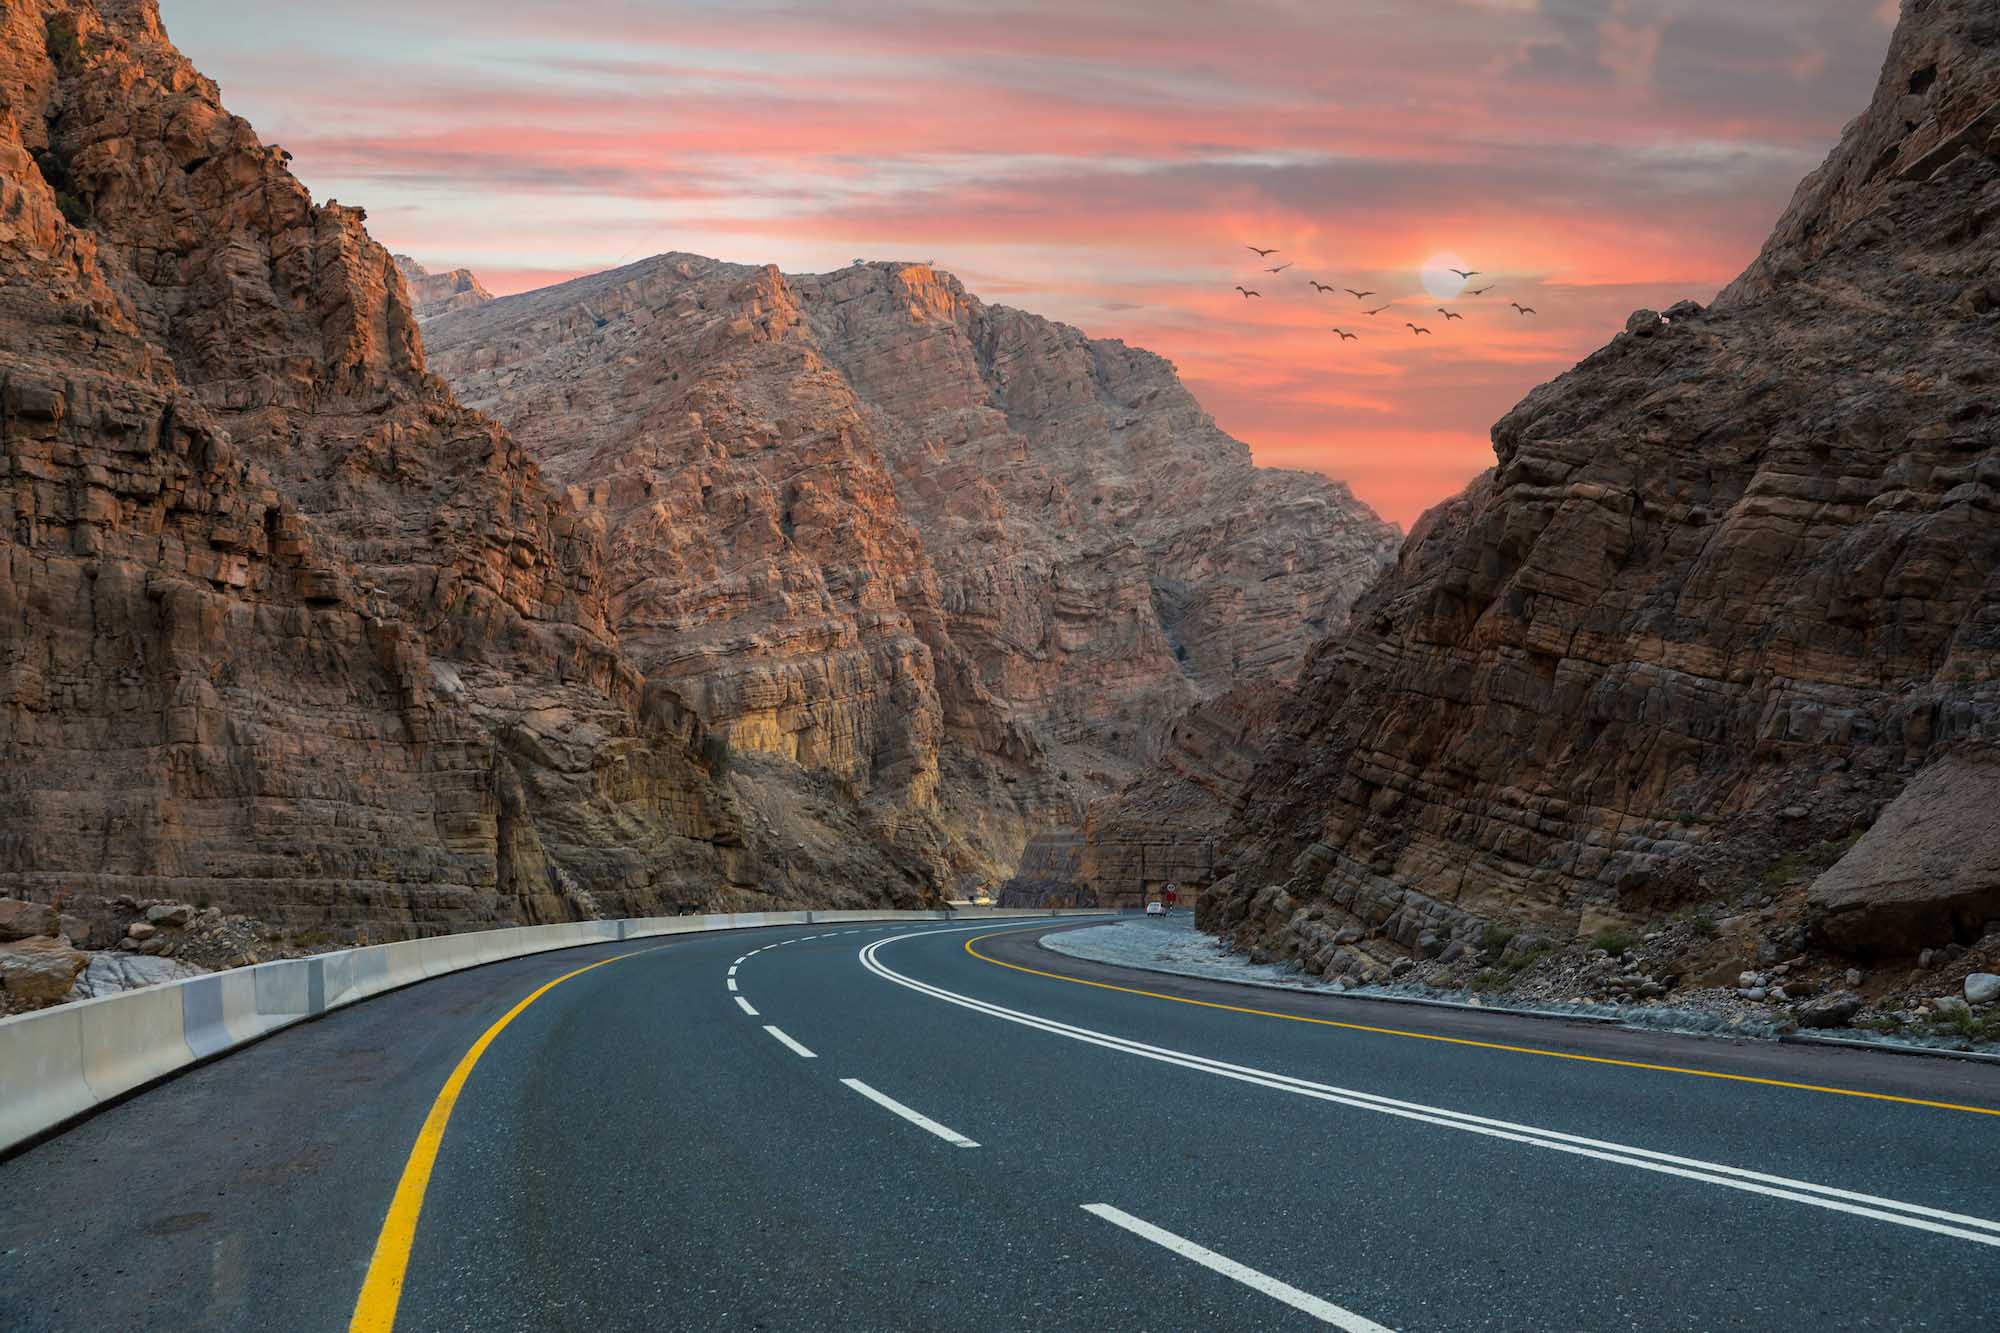 Ak si požičiate auto, čakajú na vás takéto parádne výhľady už počas vašej cesty k Jebel Jais.